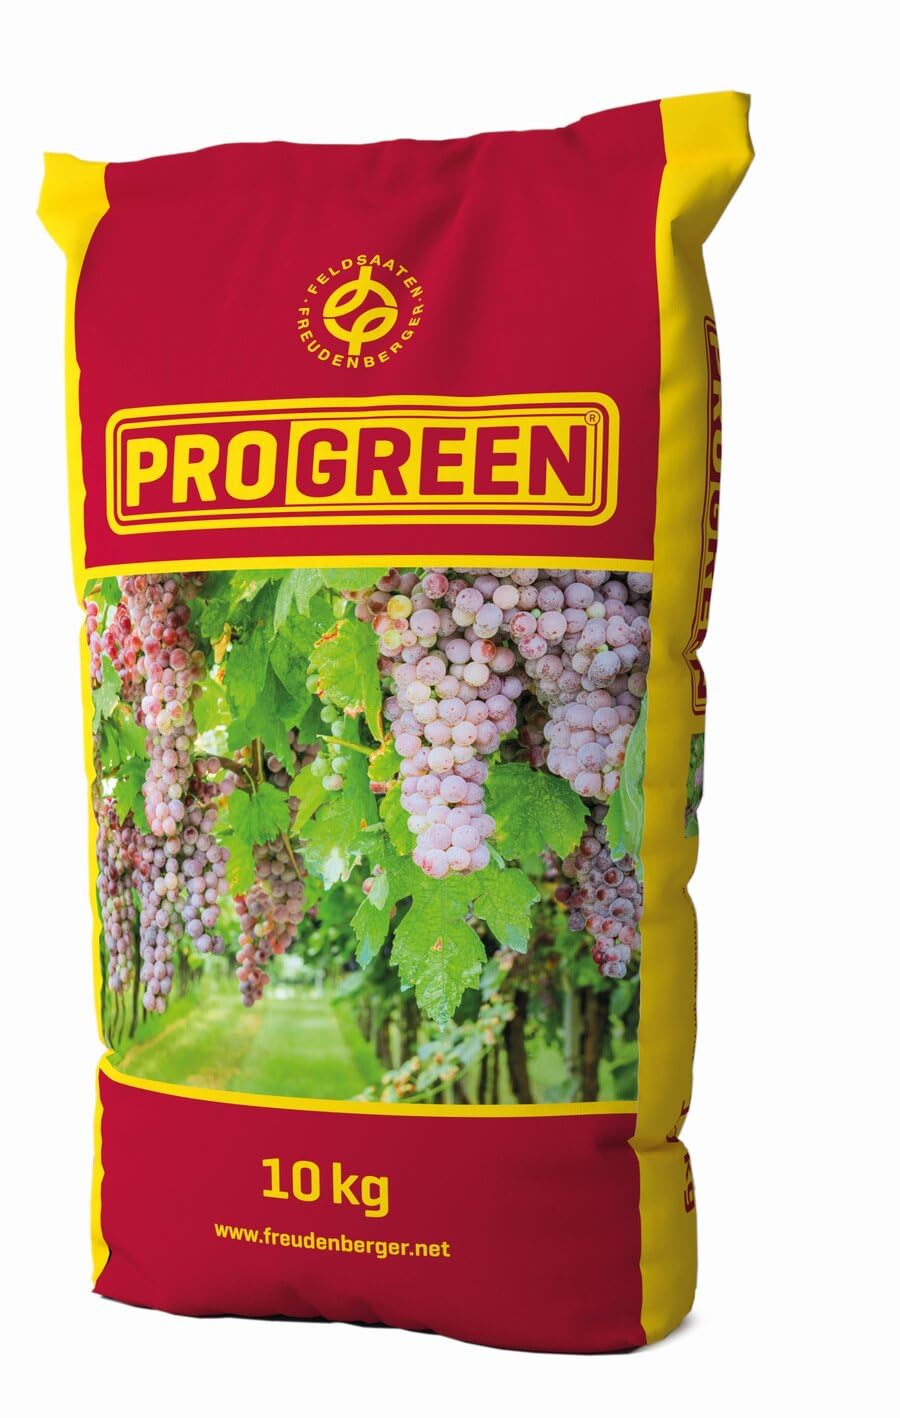 ProGreen WB120 Mulchmischung II 10kg Saatgut zur Begrünung im Weinbau Obstbau Baumkulturen für tiefgründige Standorte